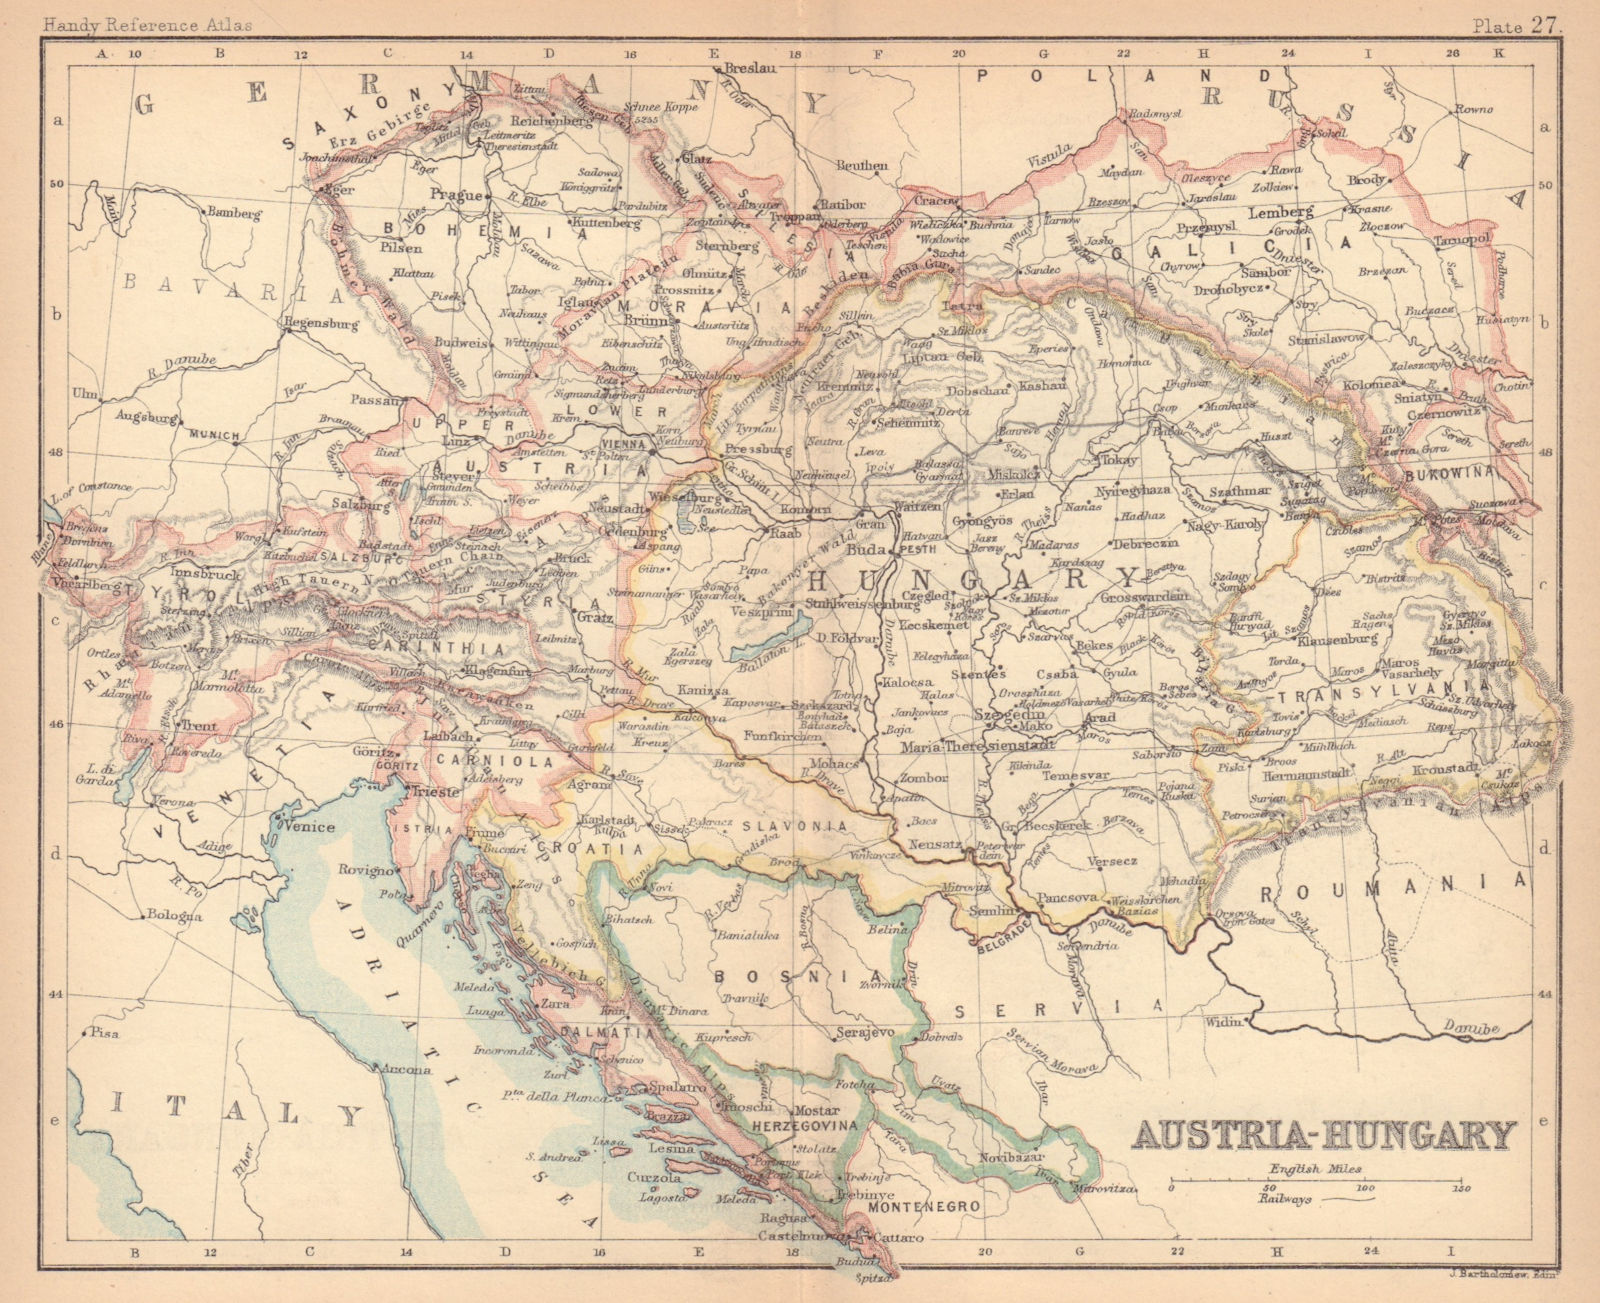 Austria-Hungary. Dalmatia Galicia Bohemia. BARTHOLOMEW 1888 old antique map